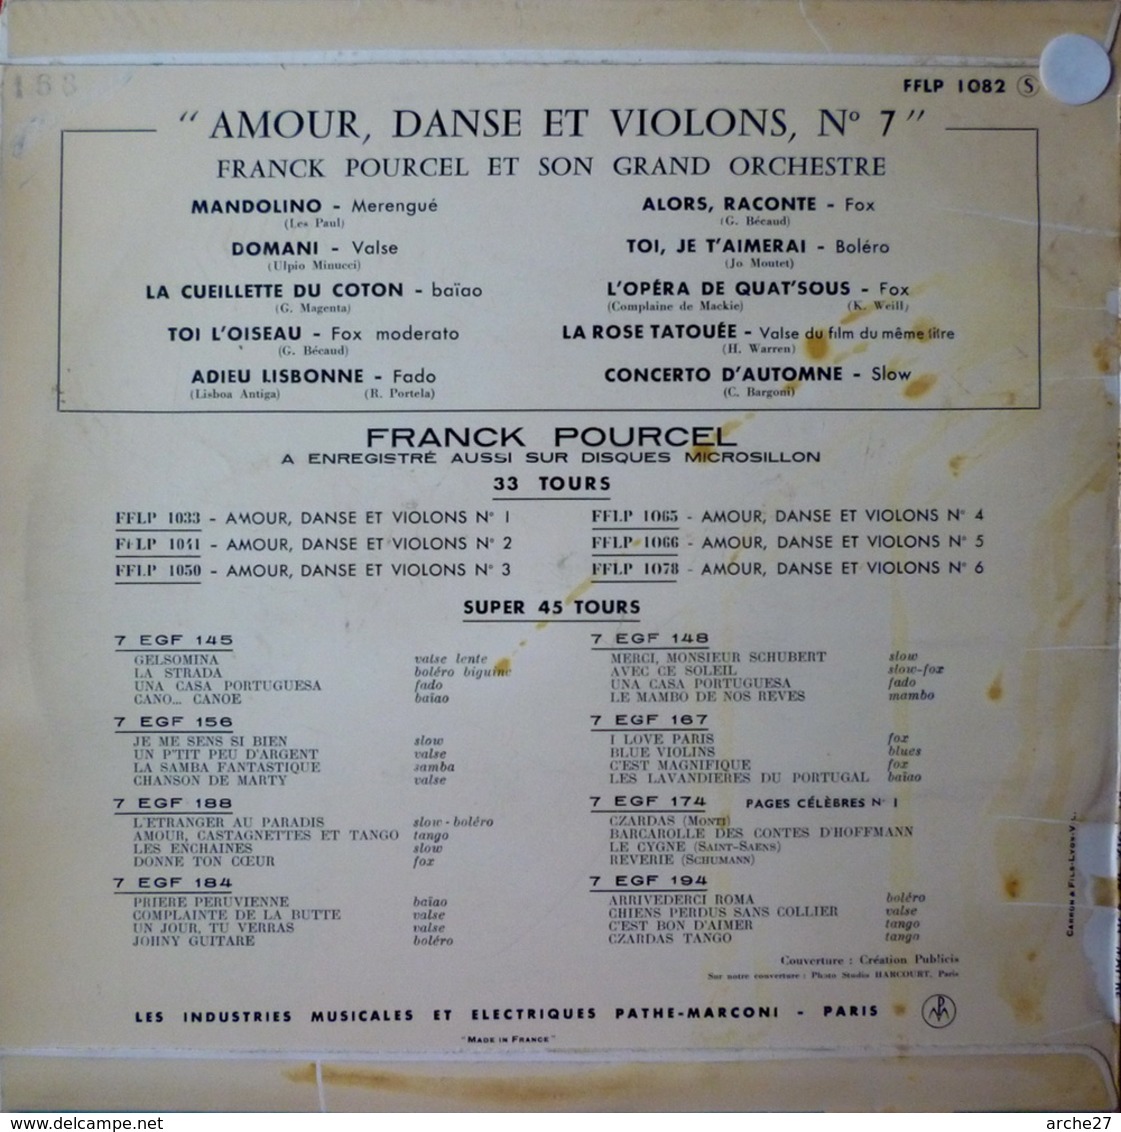 FRANCK POURCEL - 25 Cm - 33T - Disque Vinyle - Amour Danse Et Violons - 1082 - Musicals